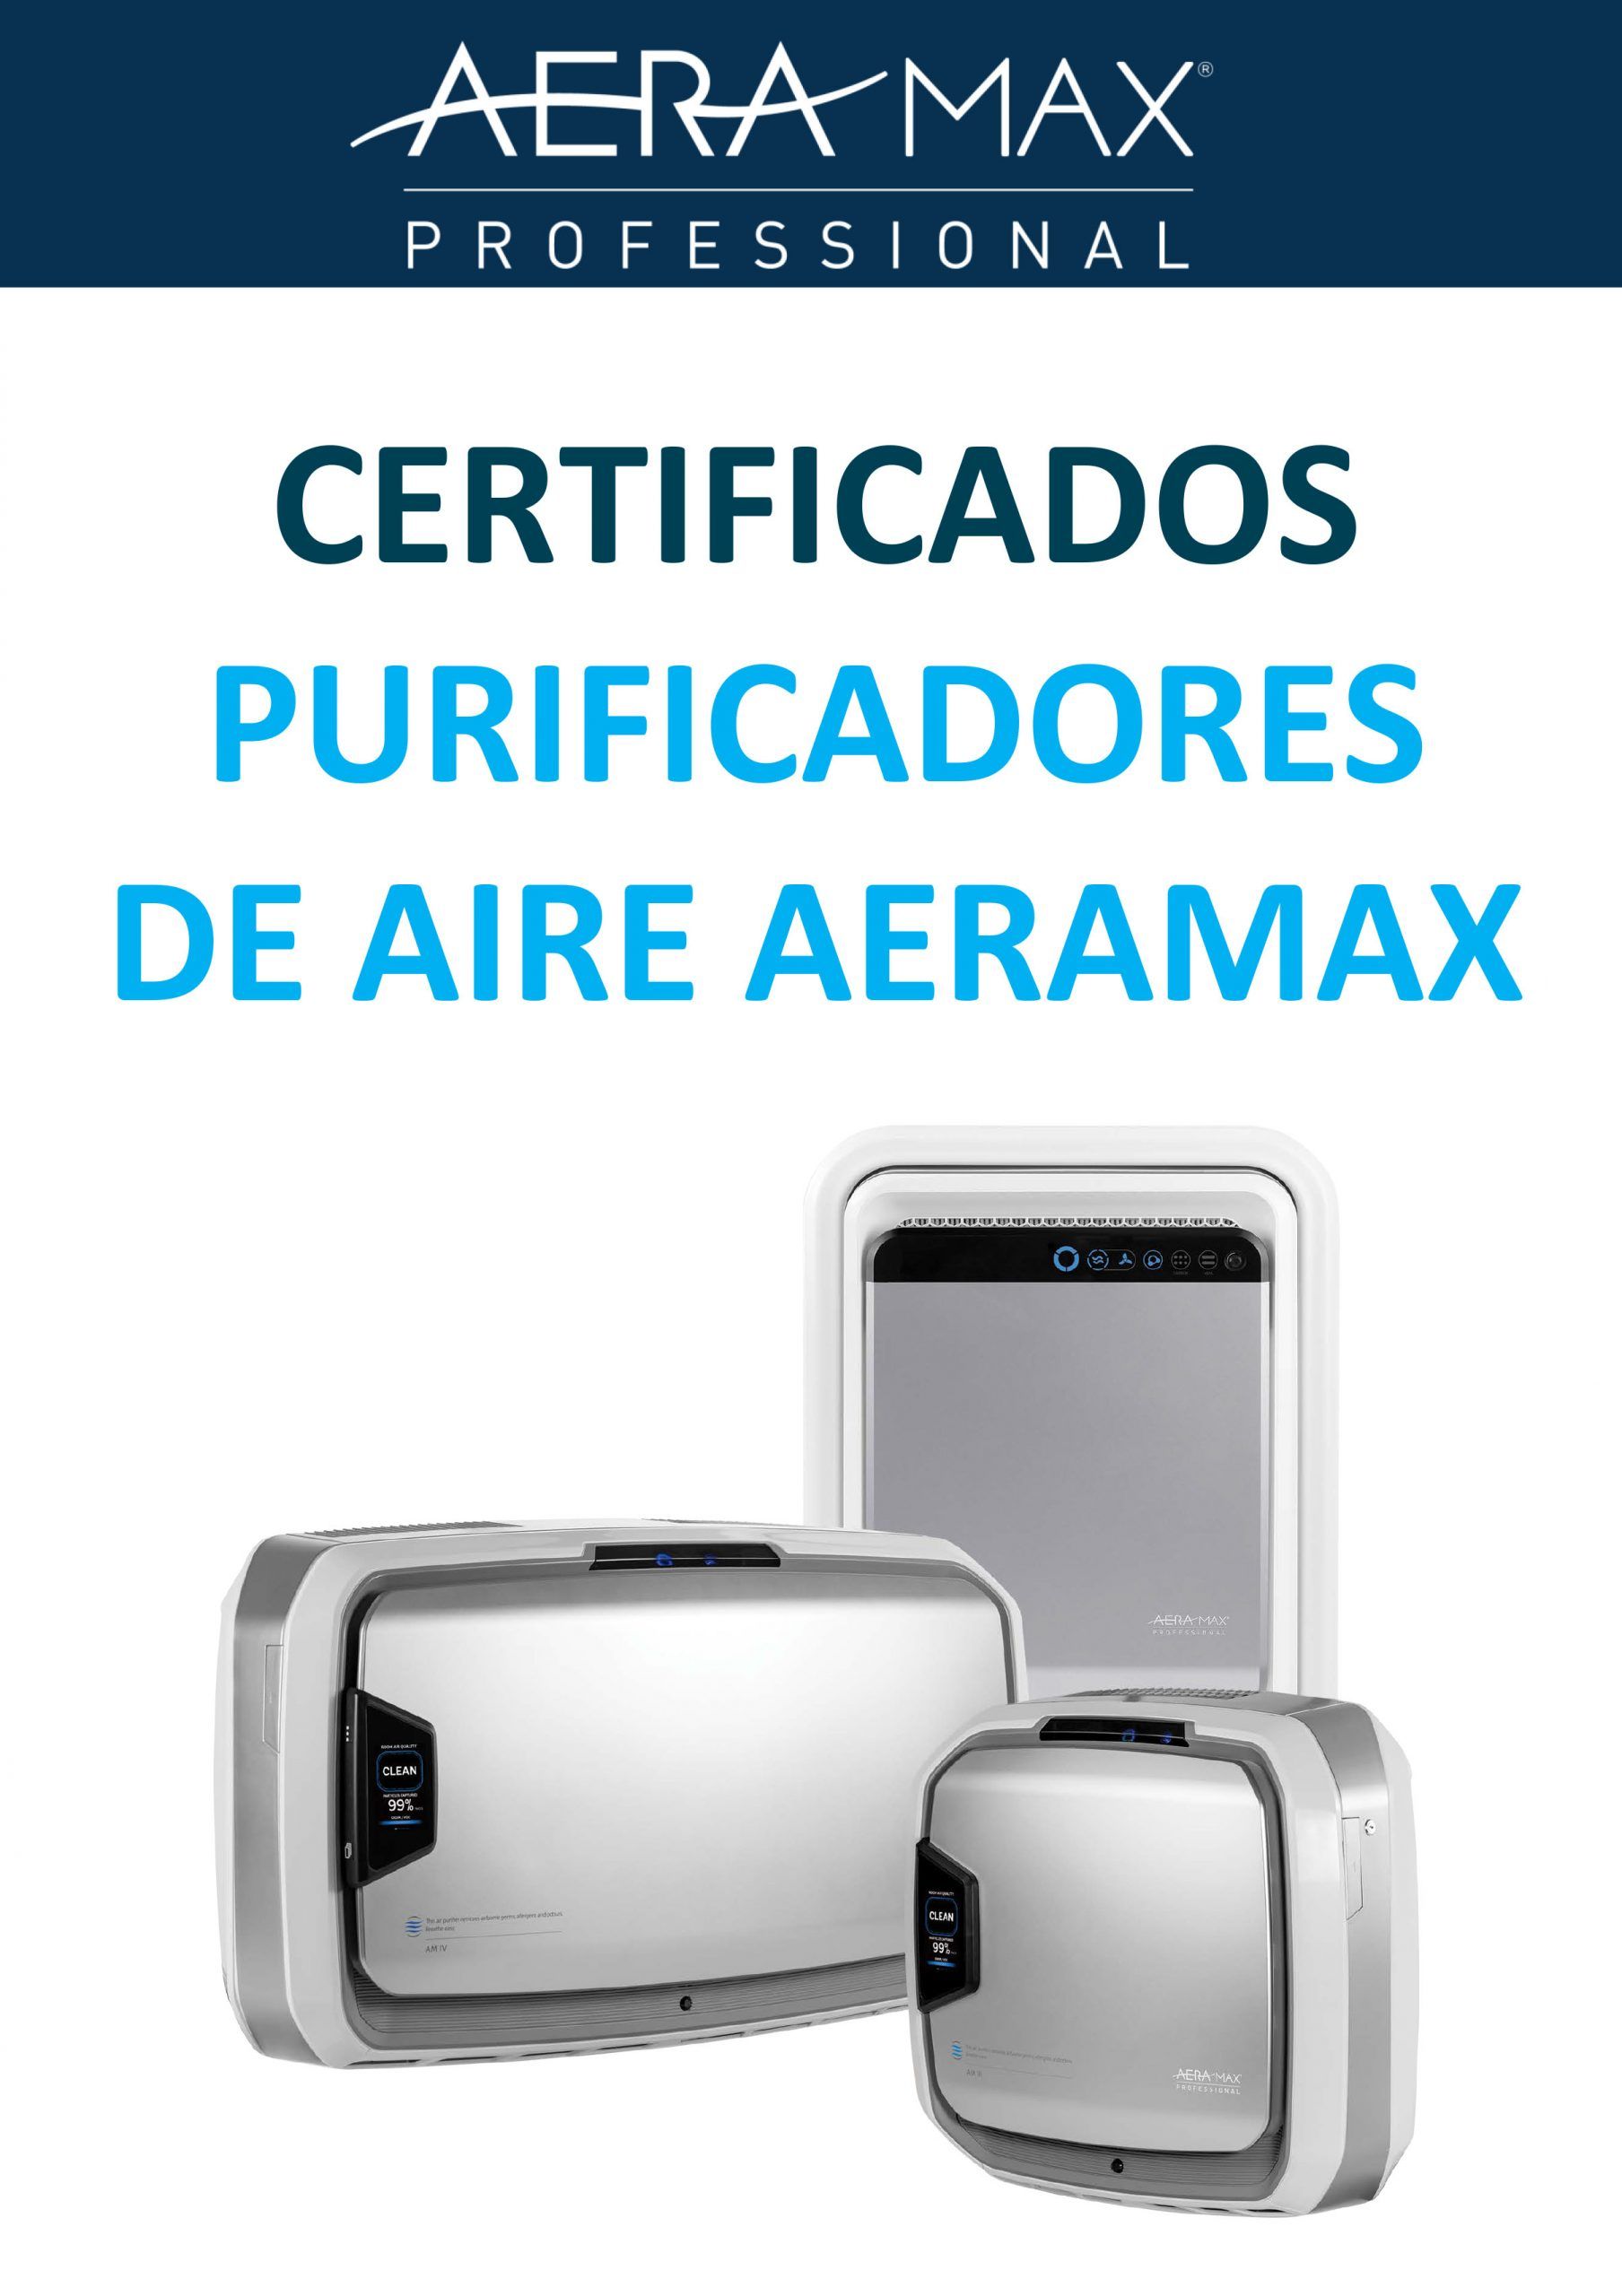 Purificadores de Aire; Aeramax; Fellowes; calidad del aire interior, filtros hepa